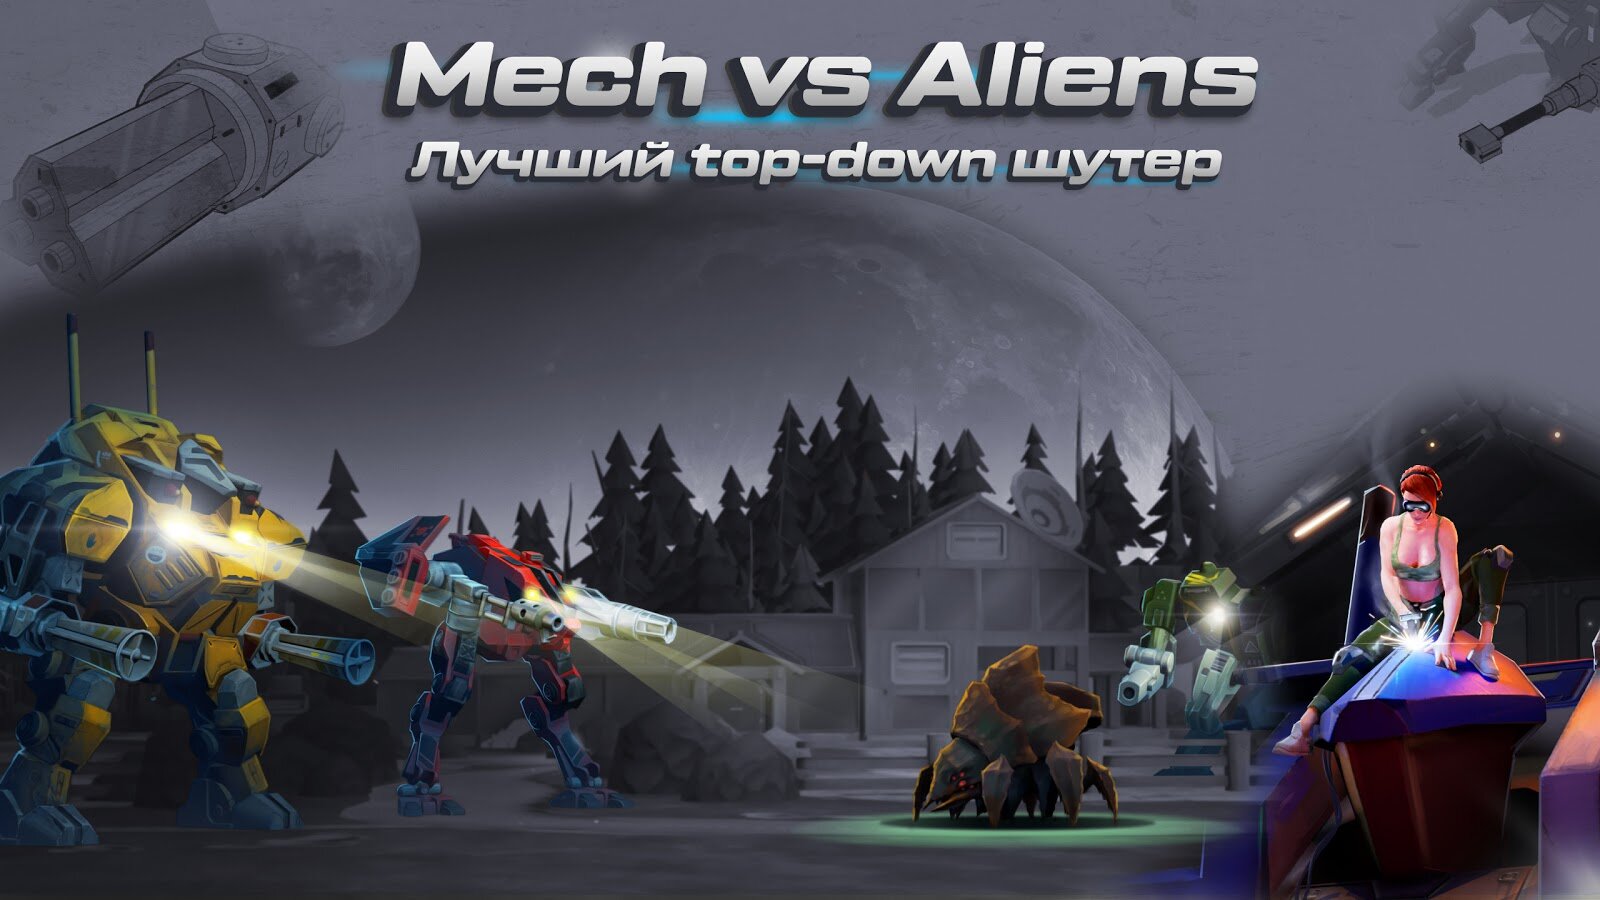 Mech vs aliens rpg. Mech vs Aliens. Mech vs Aliens Revolt. Mech versus Aliens. Mechs vs Aliens.